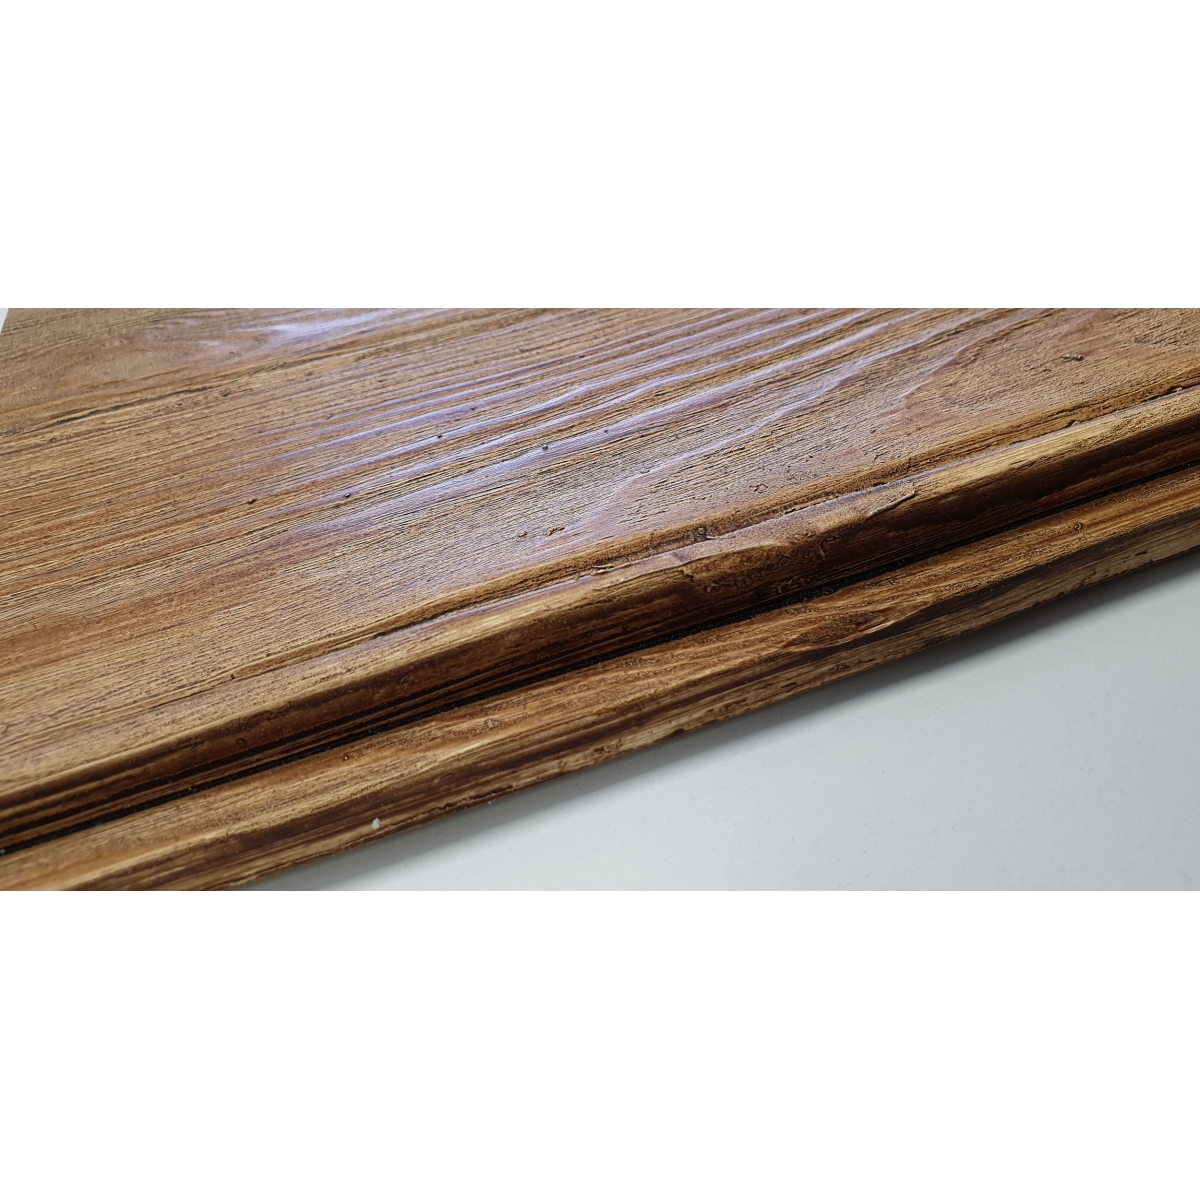 Vigas imitación madera de poliuretano La Viguería - Panel rústico de seis lamas imitación madera de 300x62cm